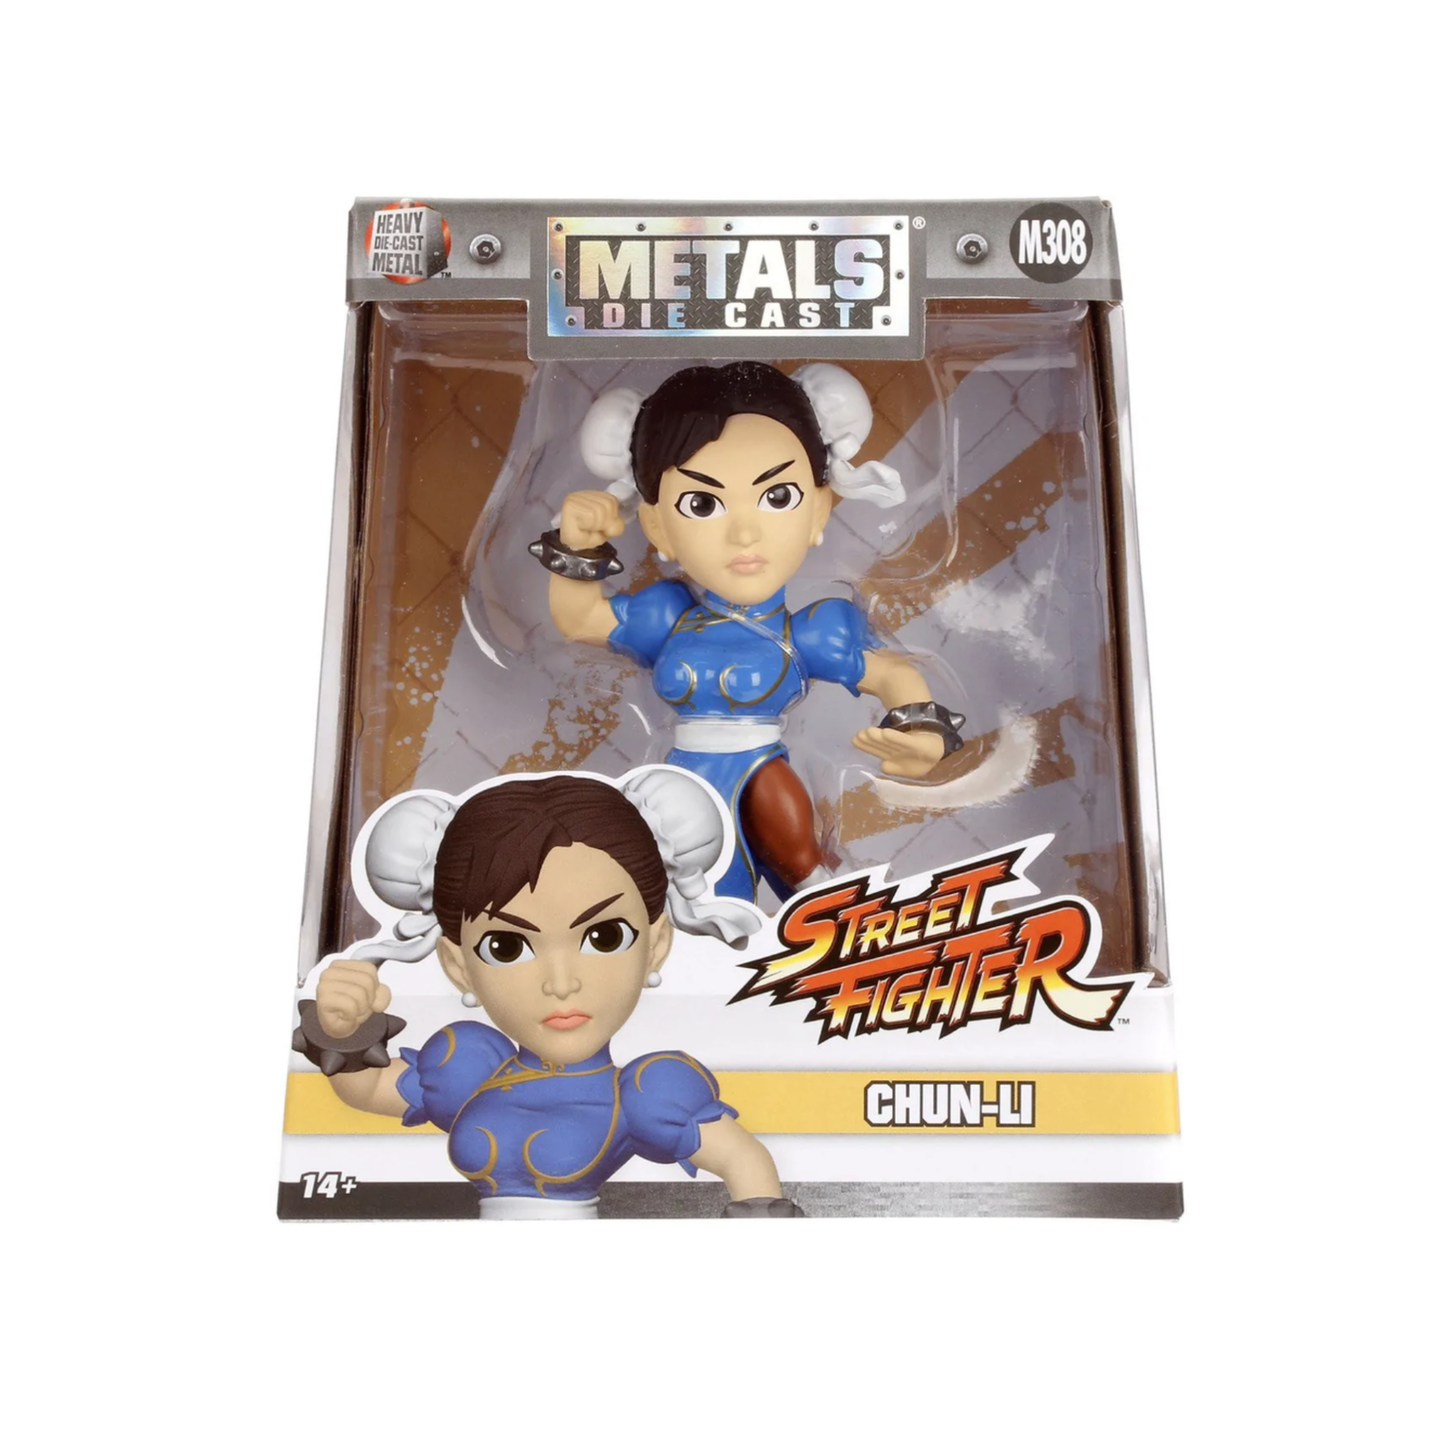 Metals Die Cast: Street Fighter Chun-Li (M308)